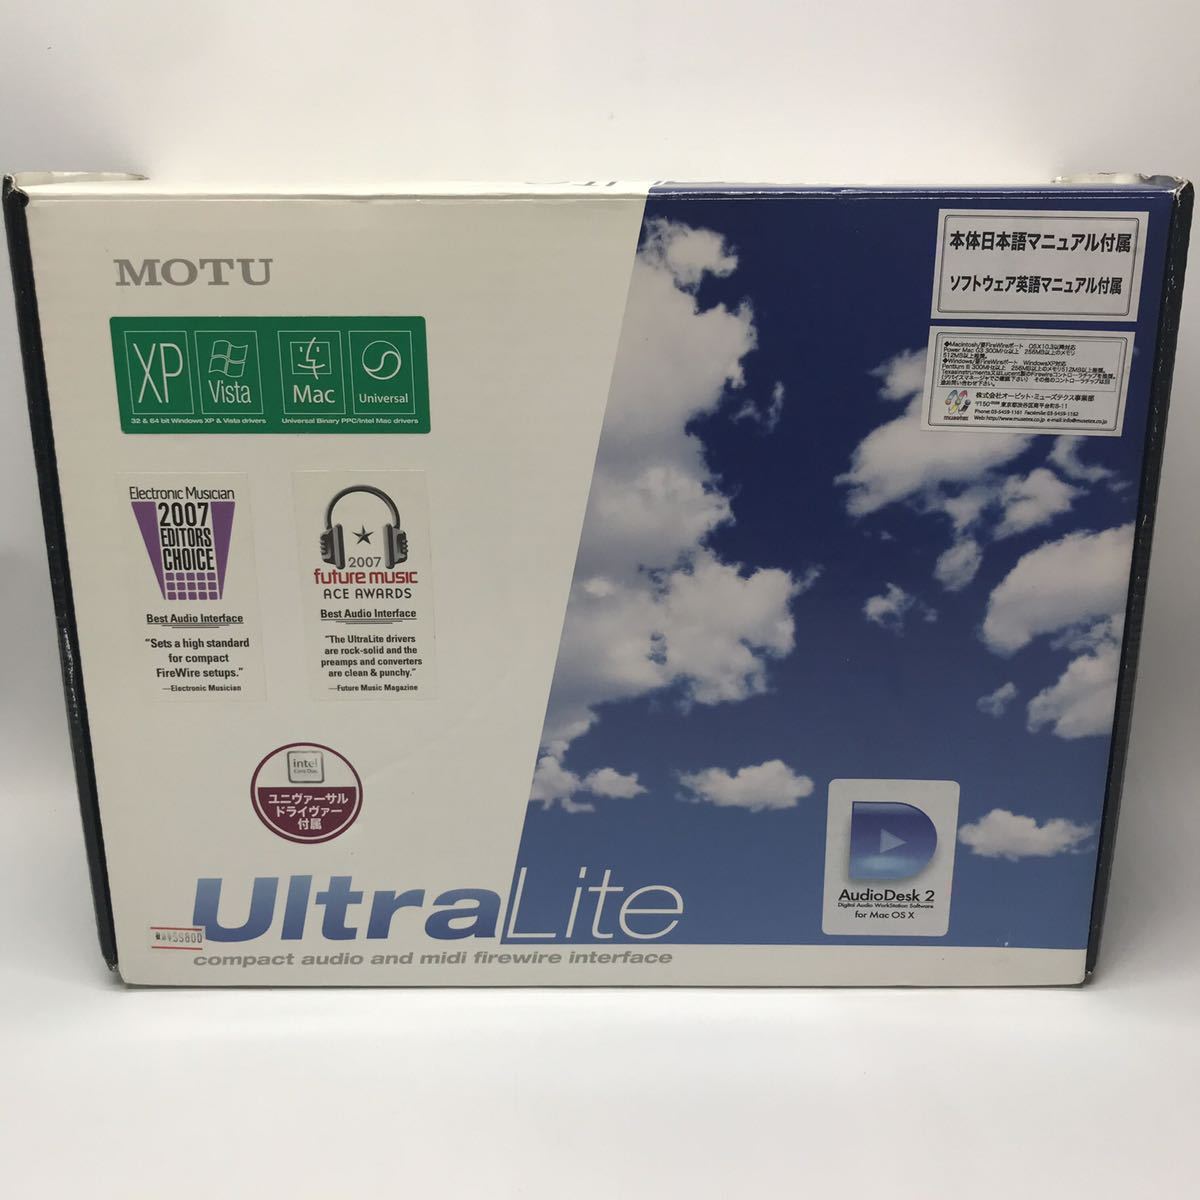 [ unused ]MOTU ULtra Lite audio interface at that time selling price 99800 jpy unused DTM DAW